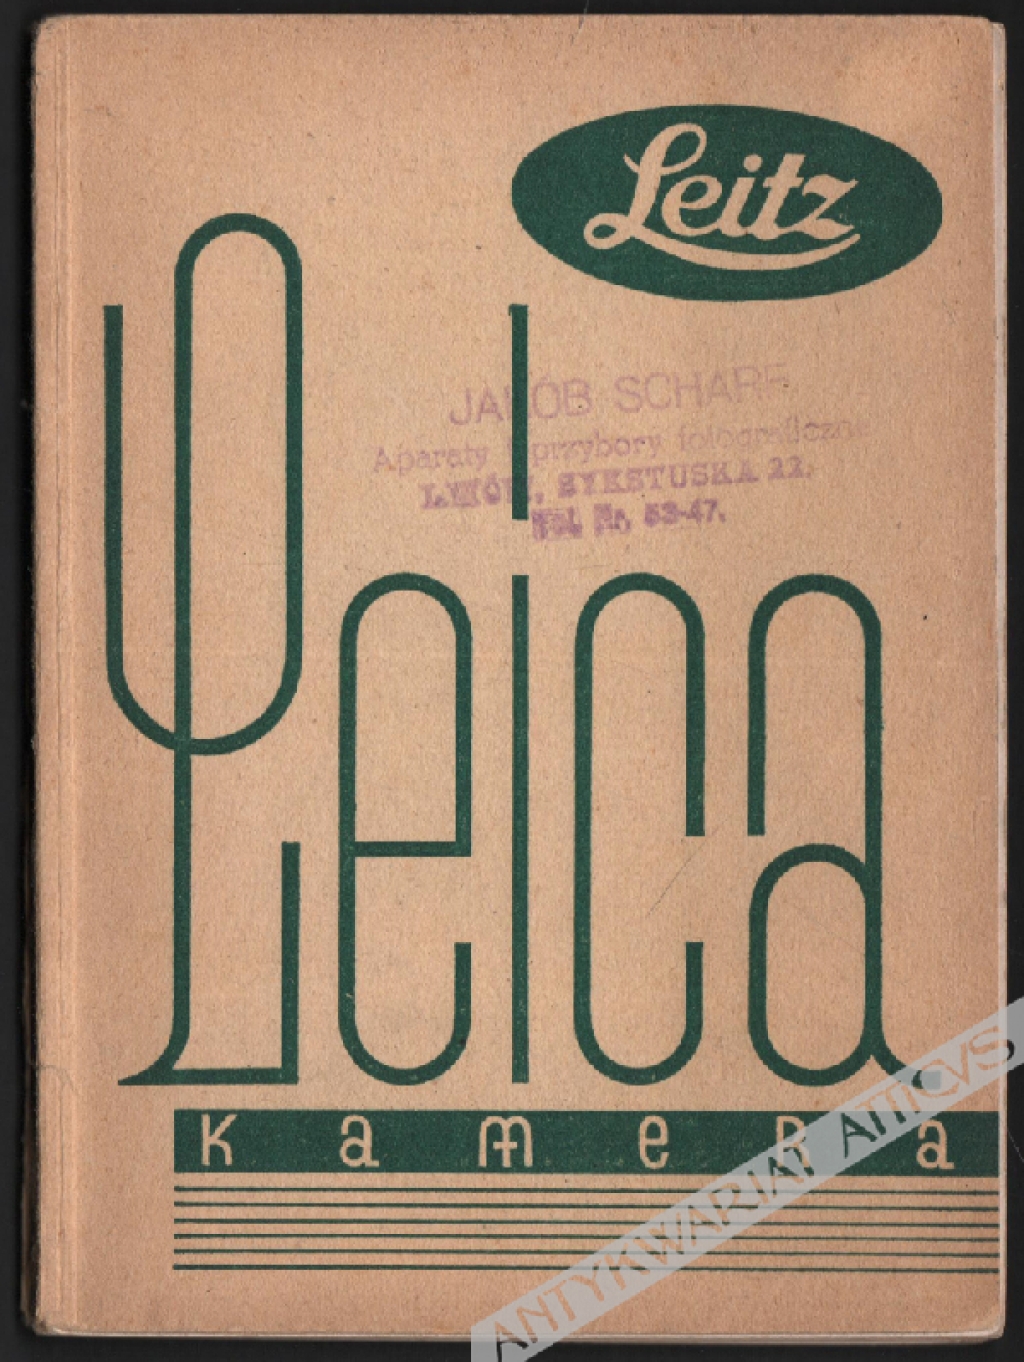 [katalog reklamowy] Leitz. Kamera Leica wraz z wszystkiemi przyborami i sprzętem pomocniczym